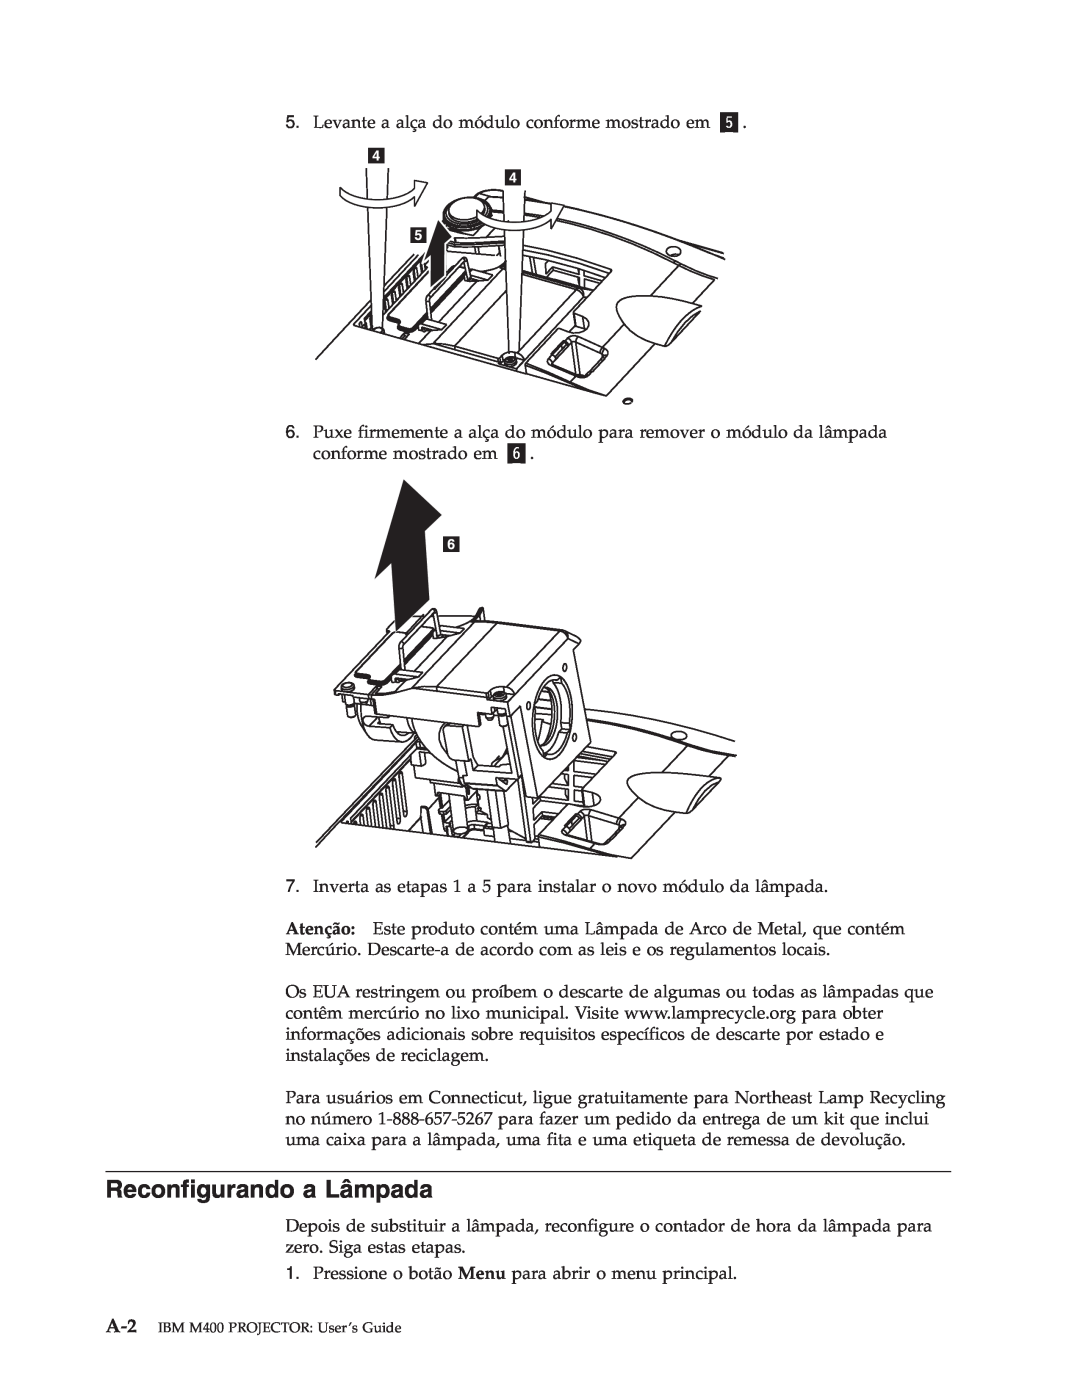 IBM manual Reconfigurando a Lâmpada, A-2 IBM M400 PROJECTOR User’s Guide 